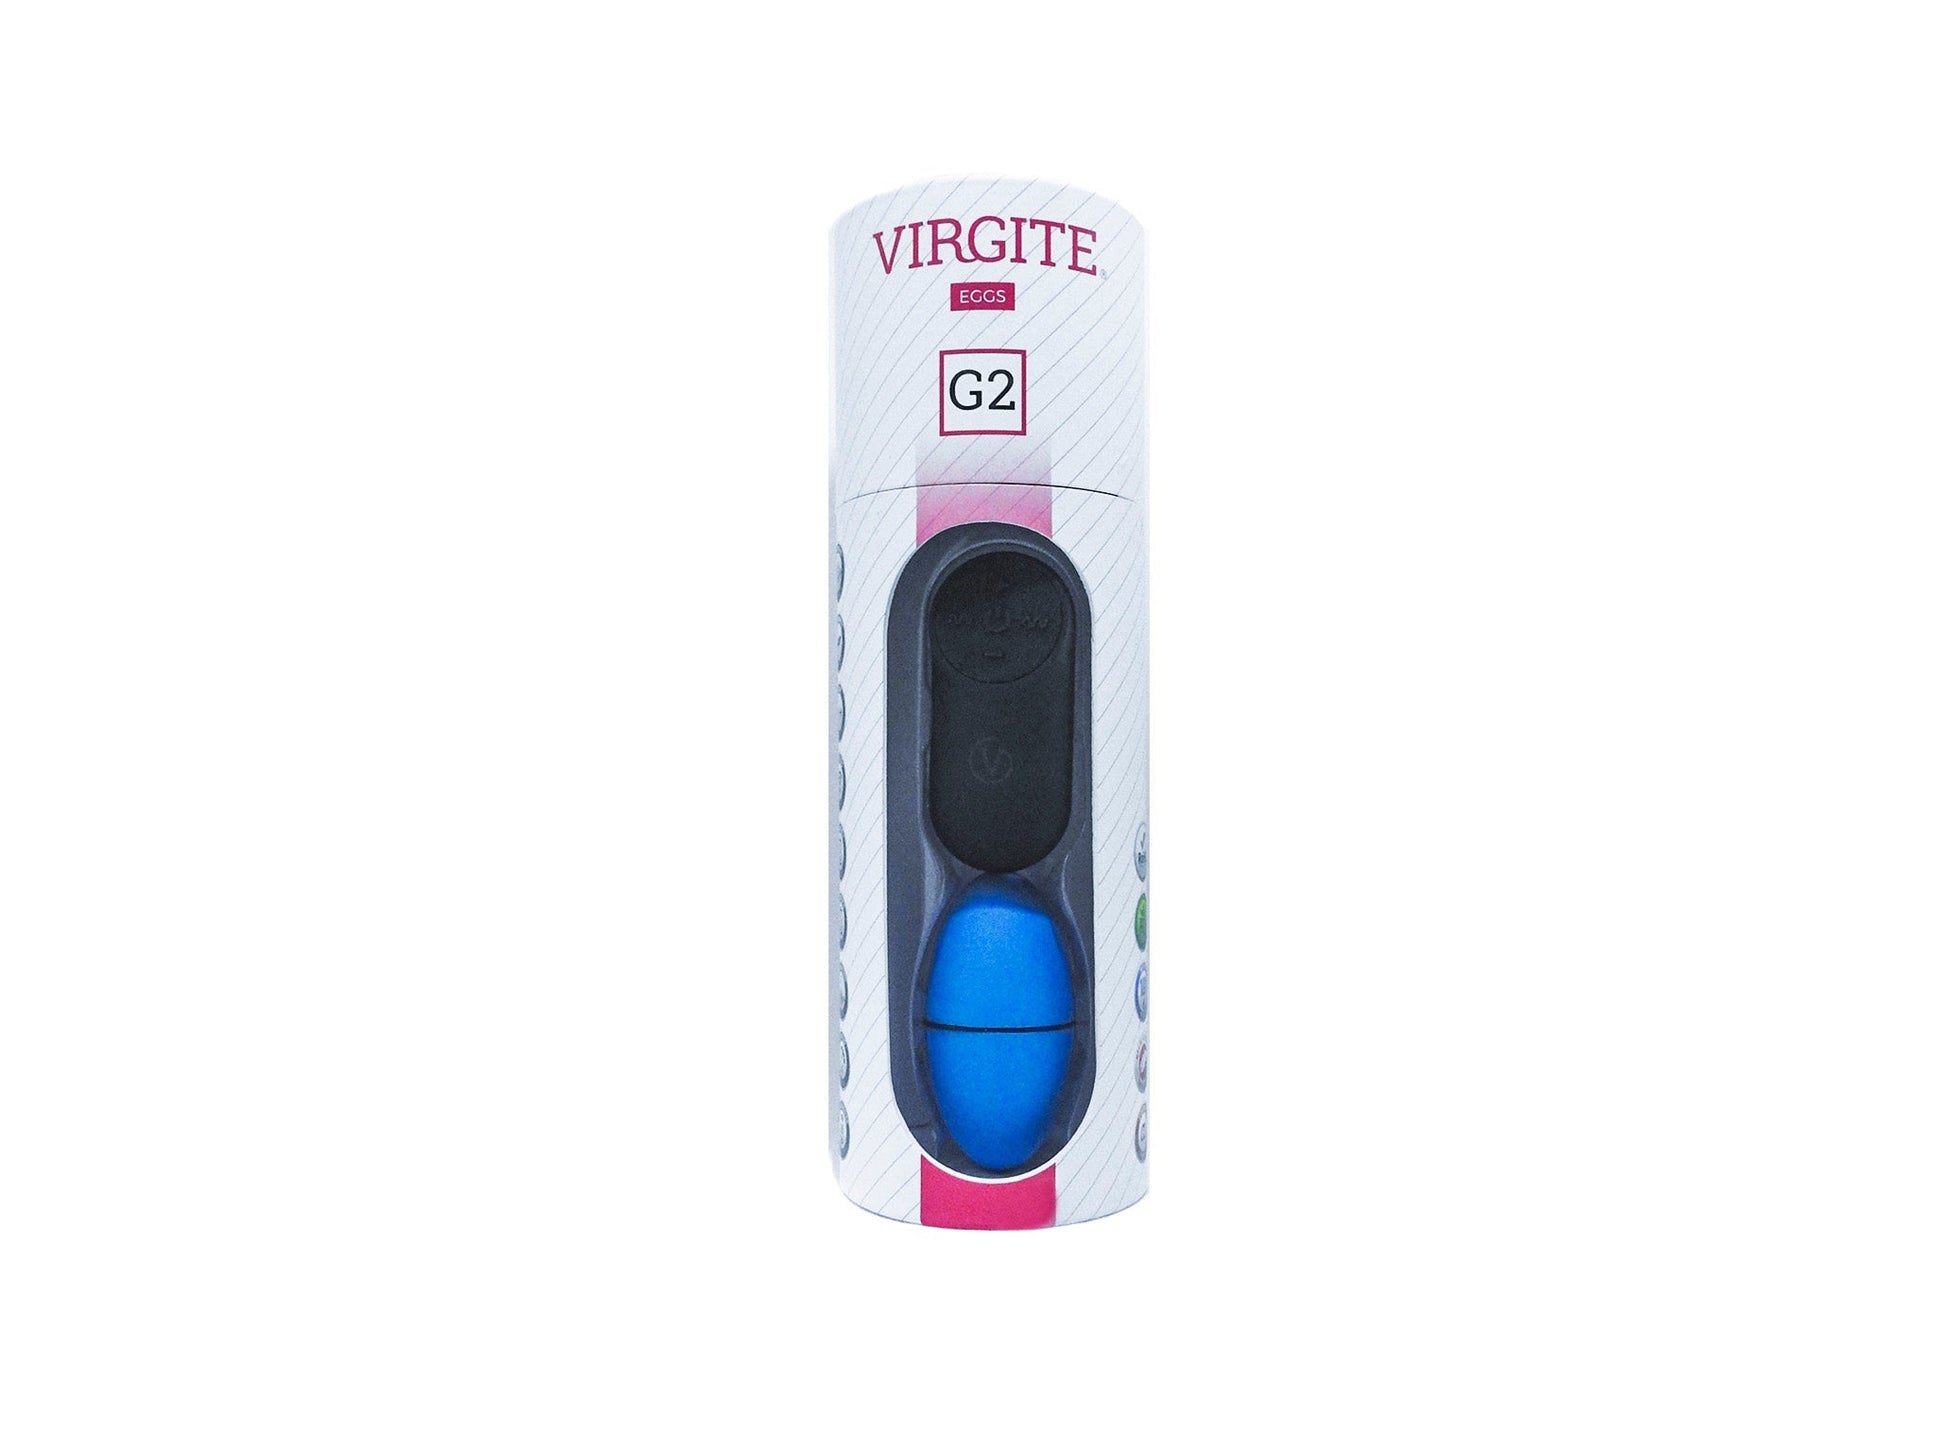 Virgite - Vibrerend Eitje Met Draadloze Afstandsbediening G2 - Blauw